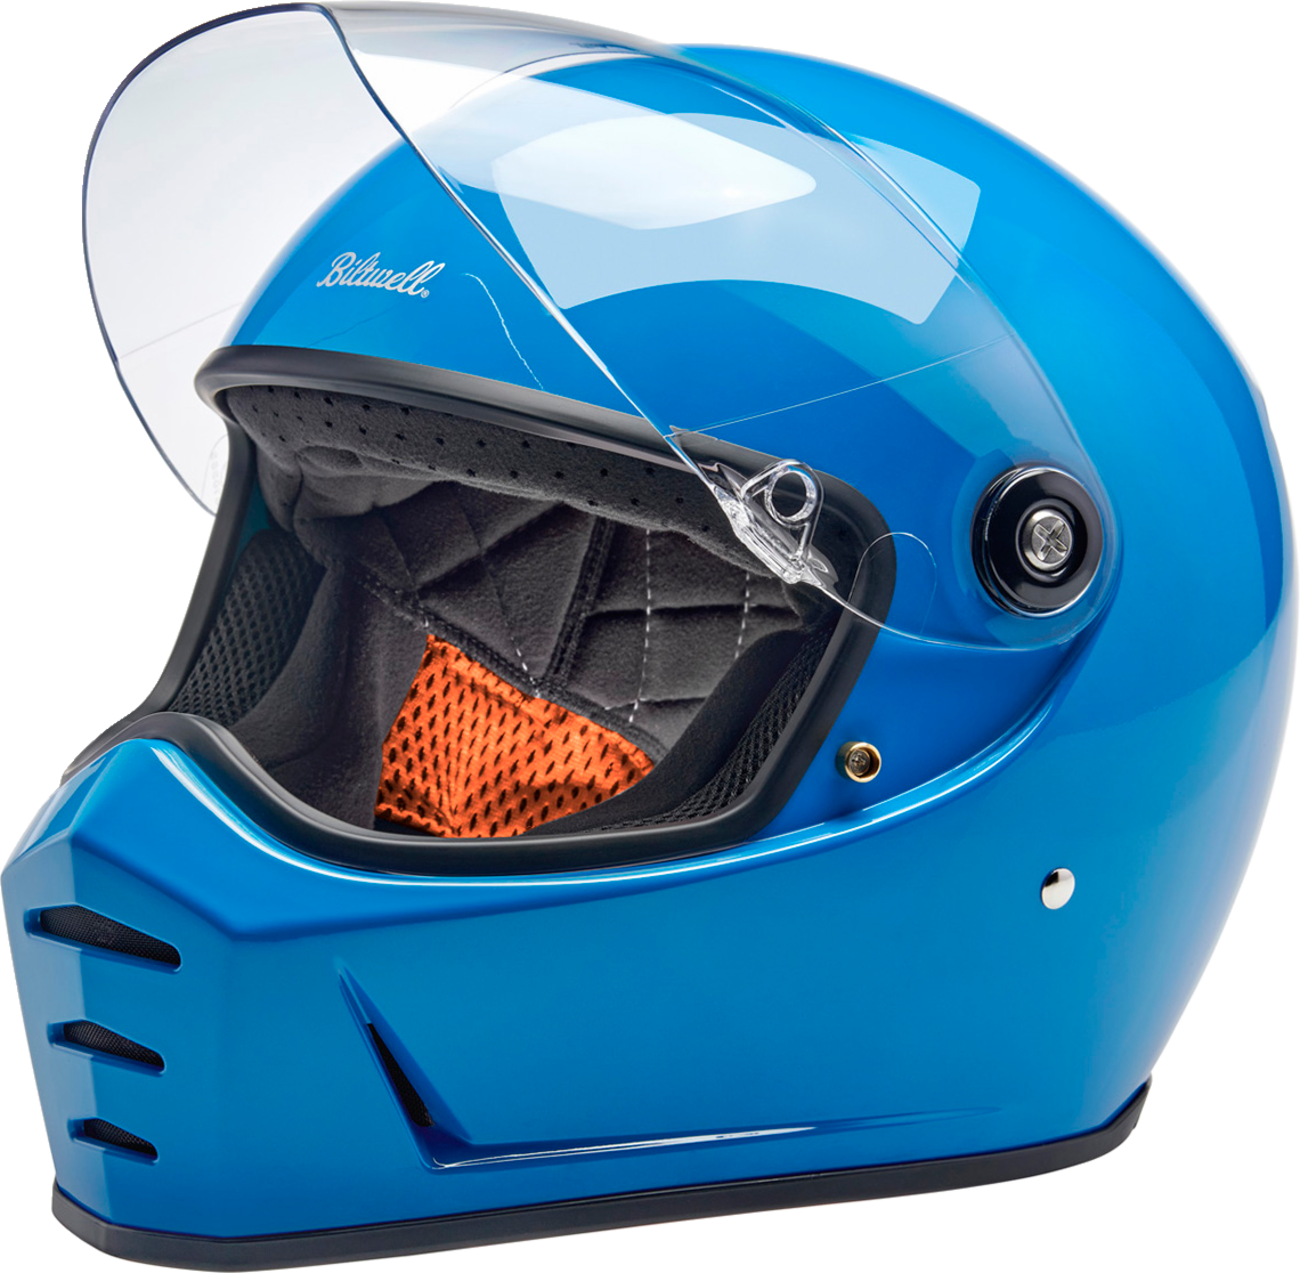 BILTWELL Lane Splitter Helmet - Gloss Tahoe Blue - Large 1004-129-504